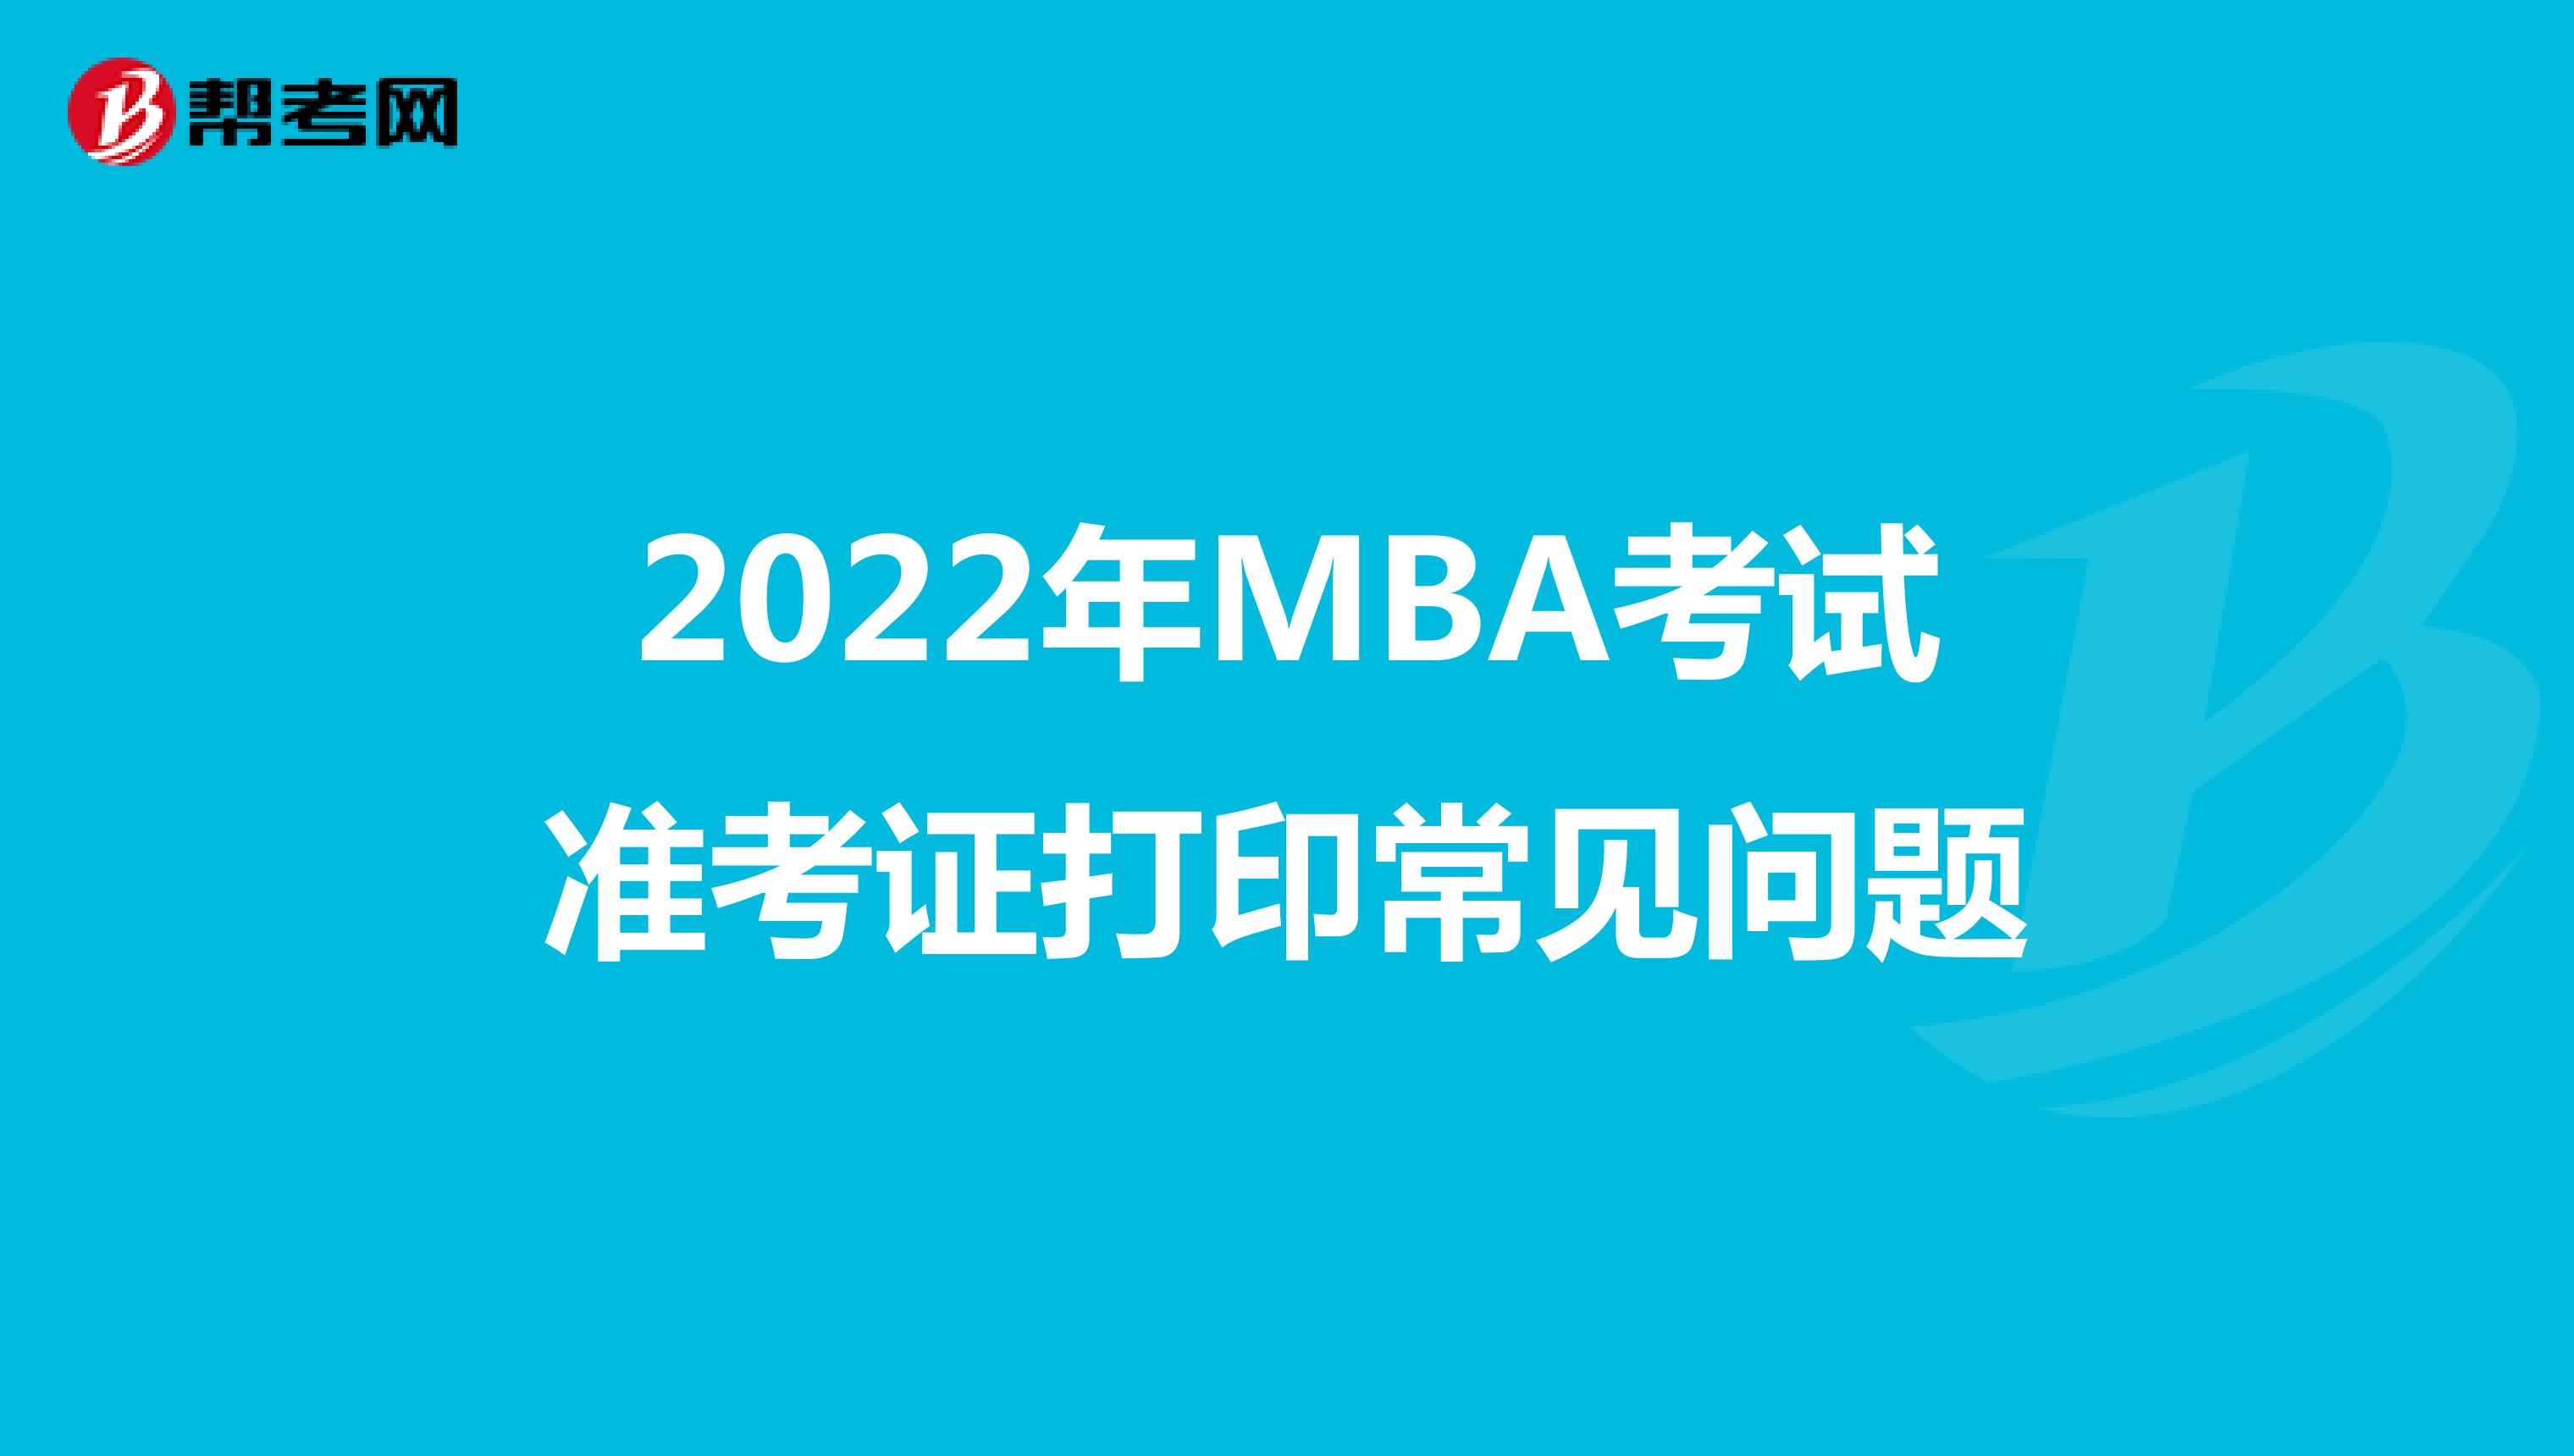 2022年MBA考试准考证打印常见问题